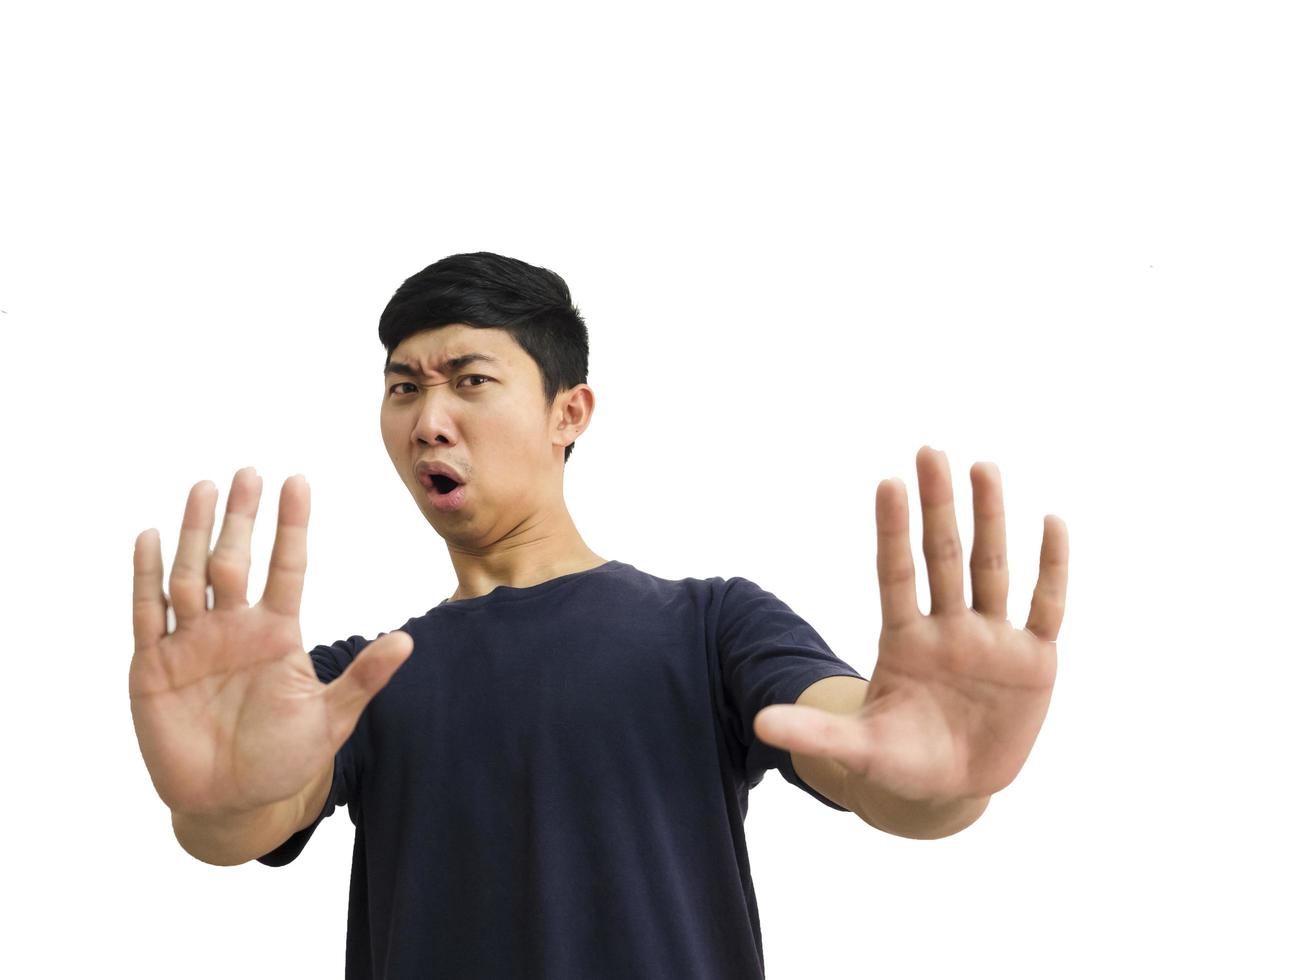 jovem asiático camisa preta mostra duas mãos cinco dedos para cima pare o choque no rosto corte meio corpo branco conceito de fundo isolado foto